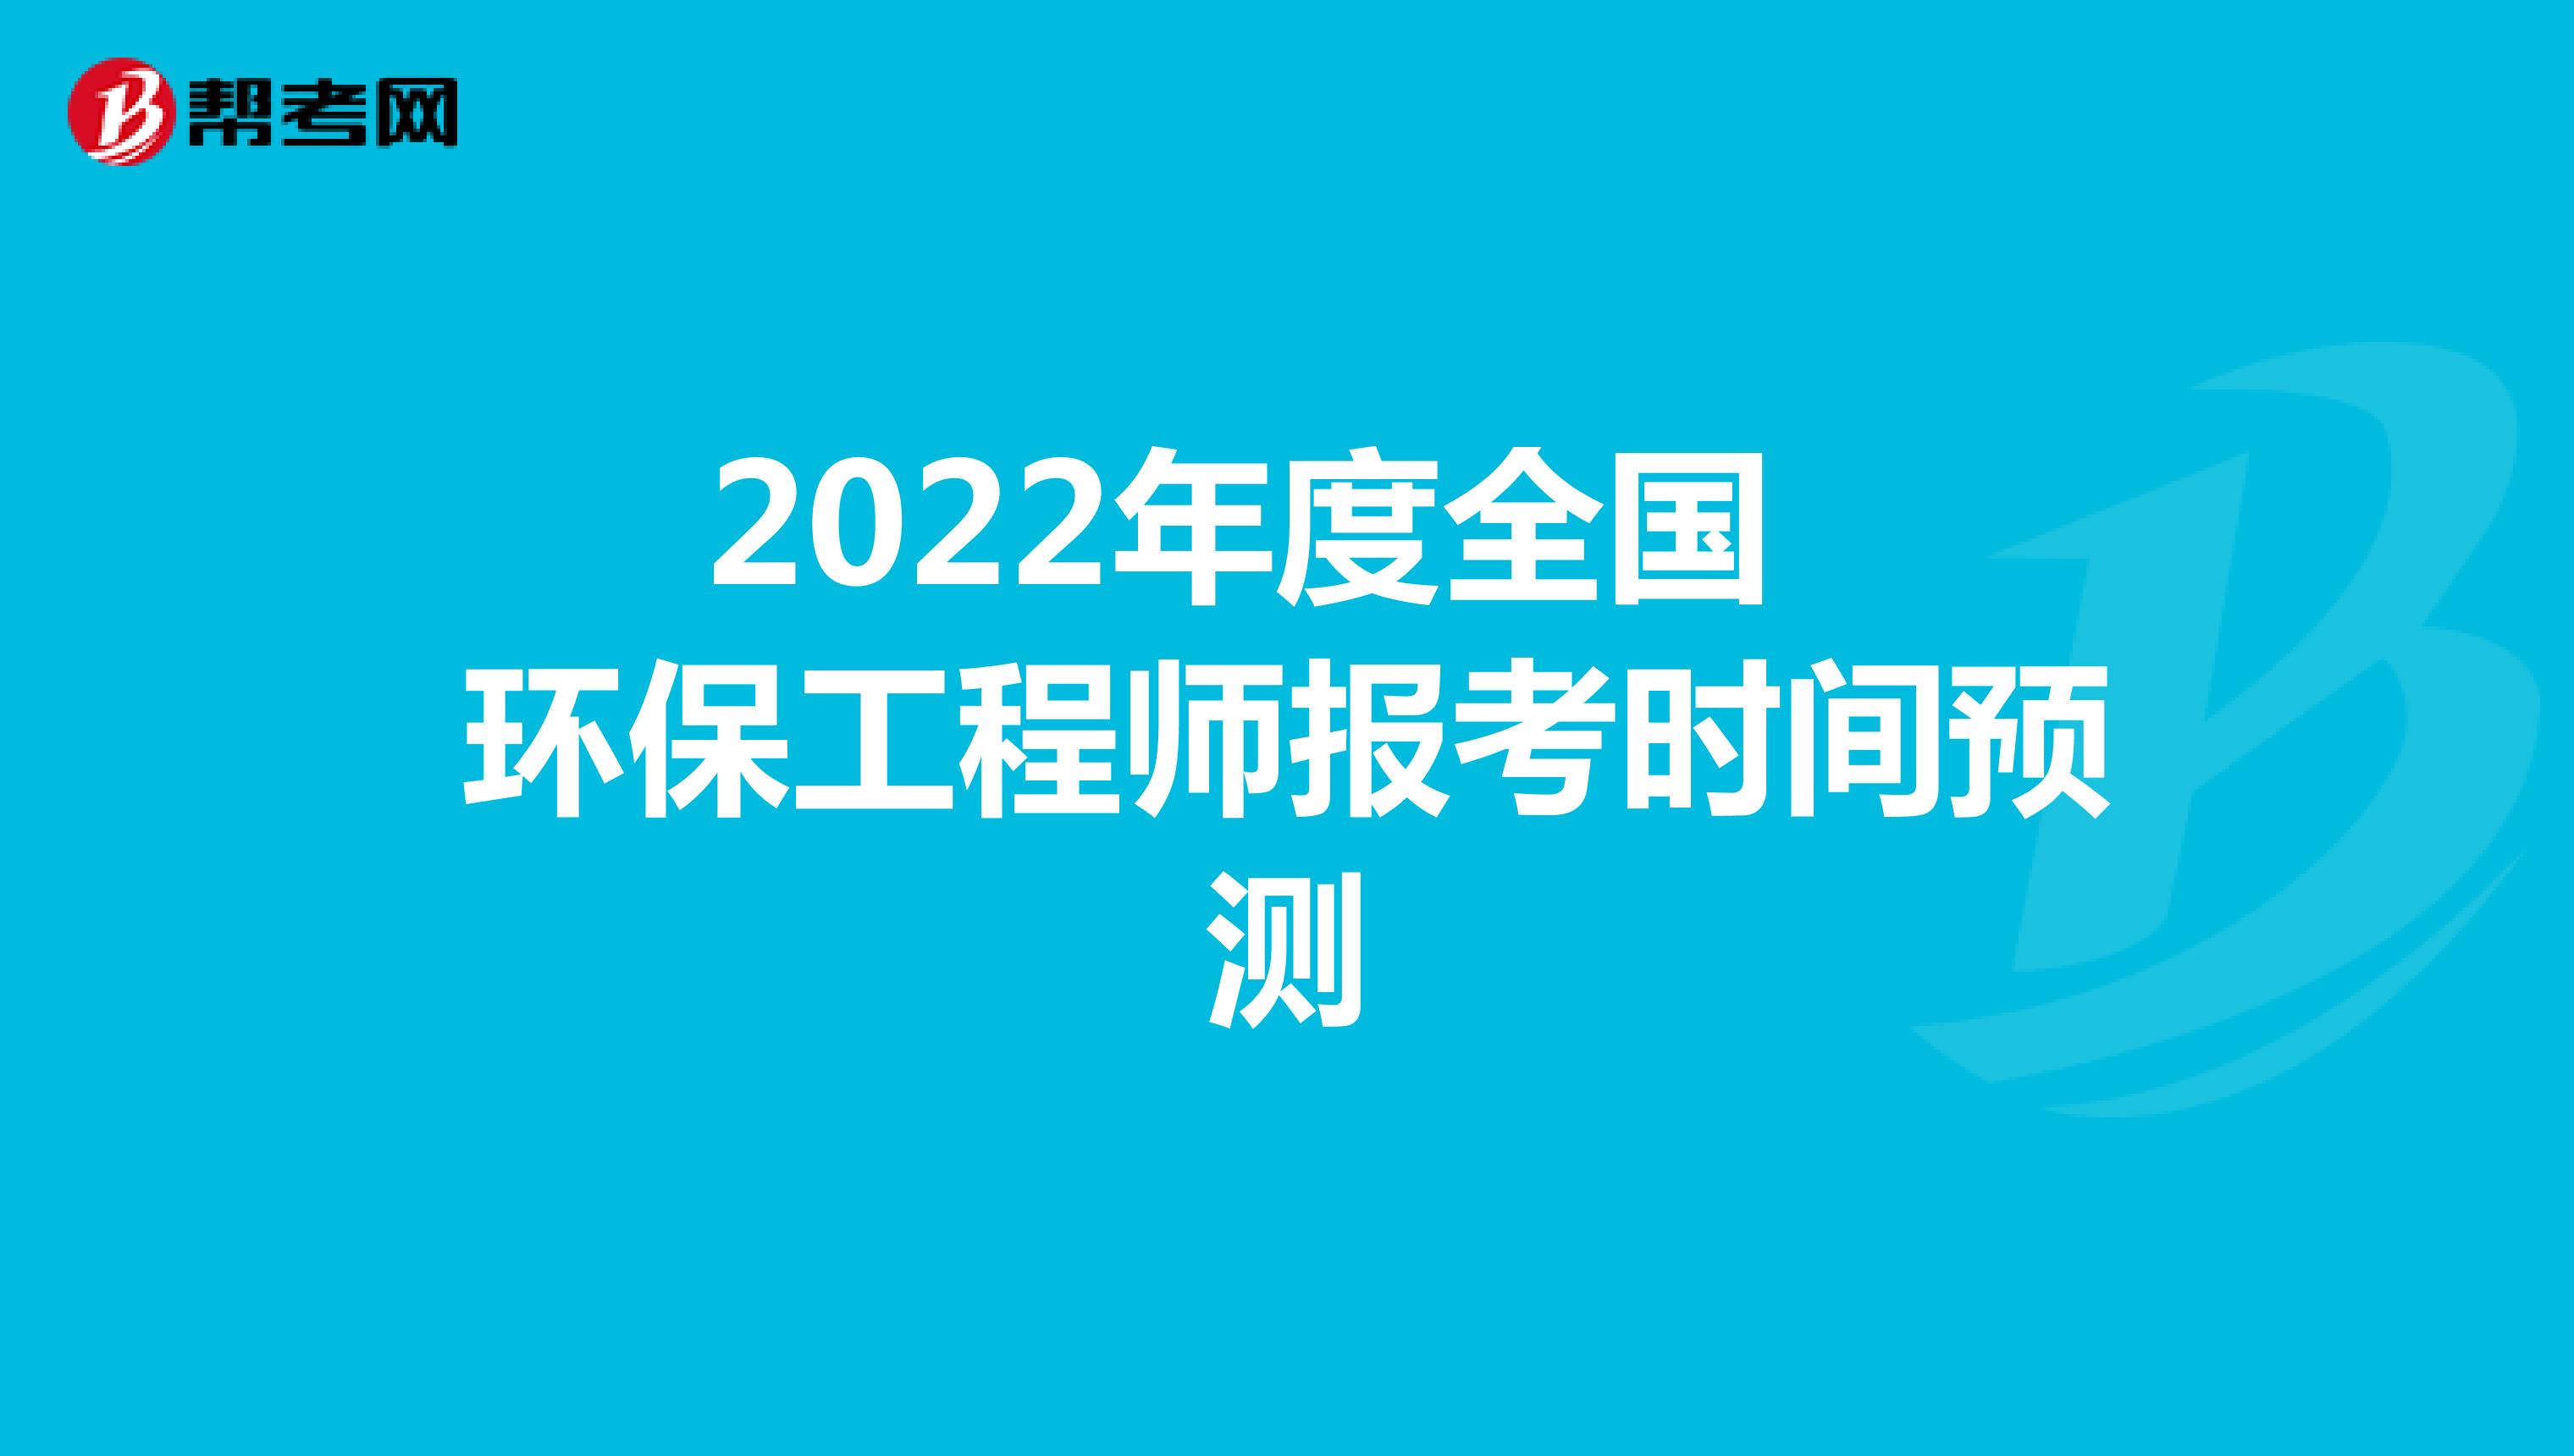 2022年度全国环保工程师报考时间预测